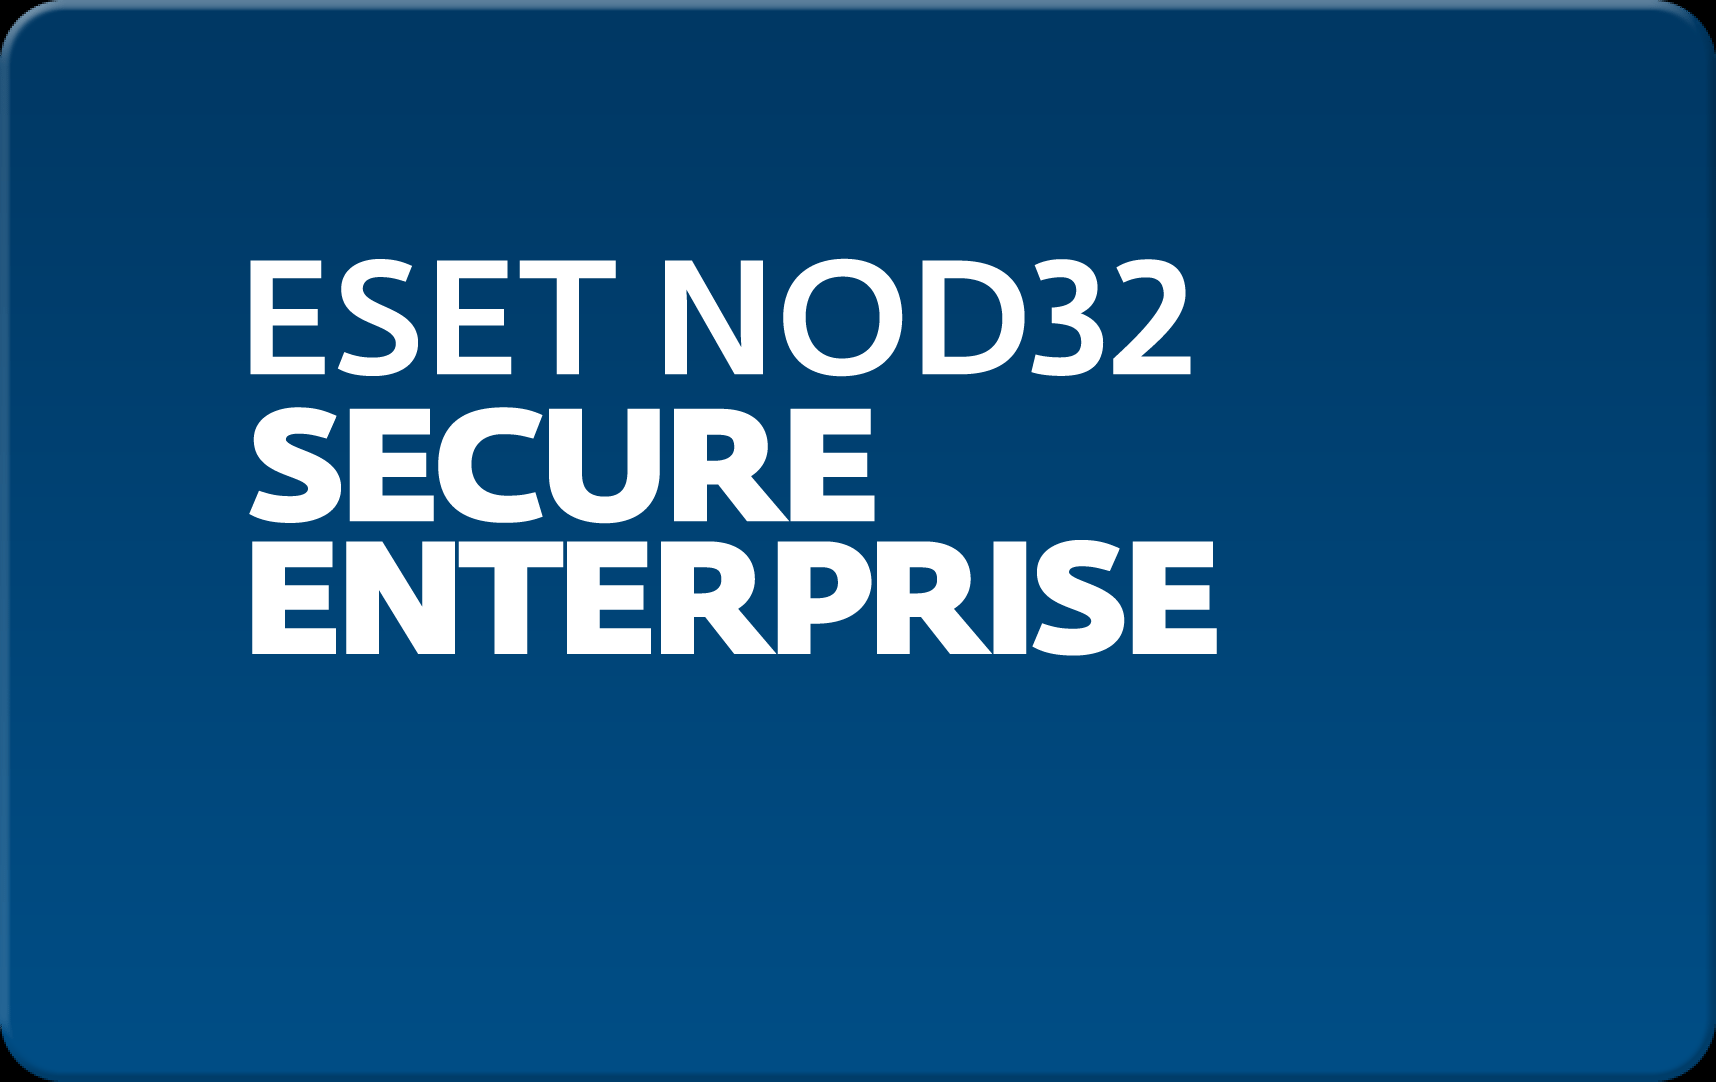        Eset NOD32 Secure Enterprise  171 